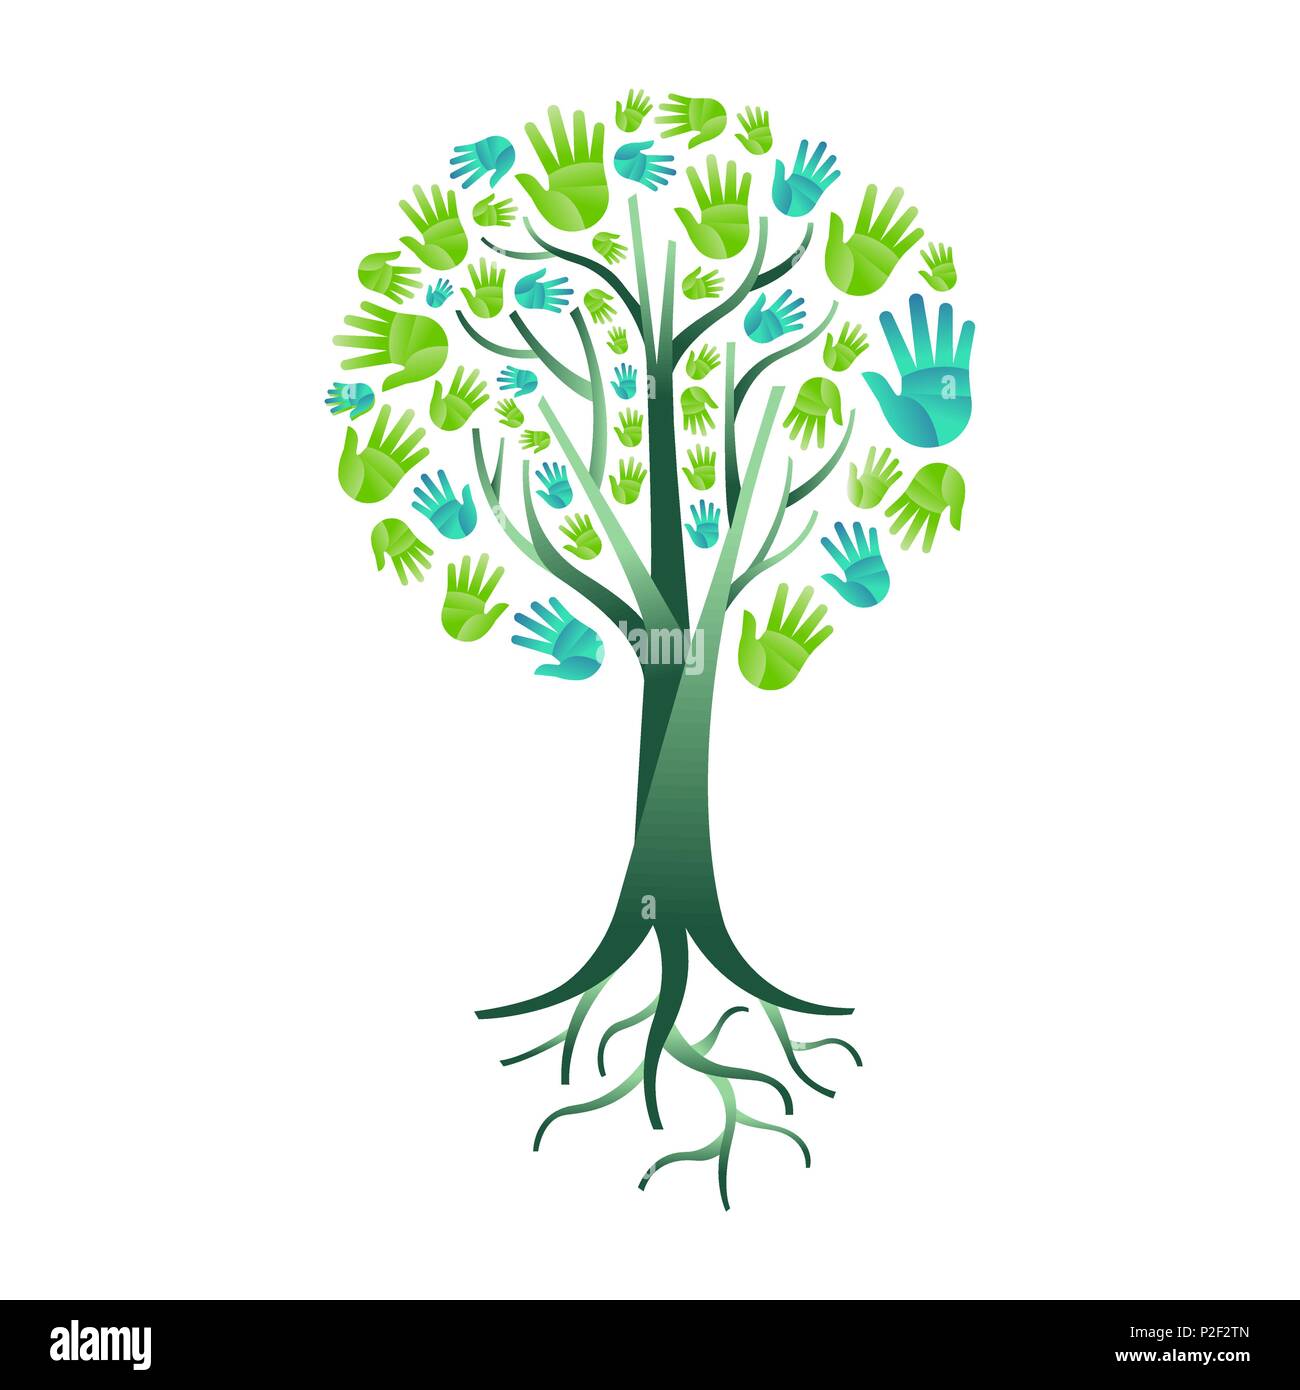 Arborescence constituée de mains humaines vert avec des branches et racines. Concept de l'aide de la nature, de l'environnement groupe ou d'équipe de soins de la terre. Vecteur EPS10. Illustration de Vecteur